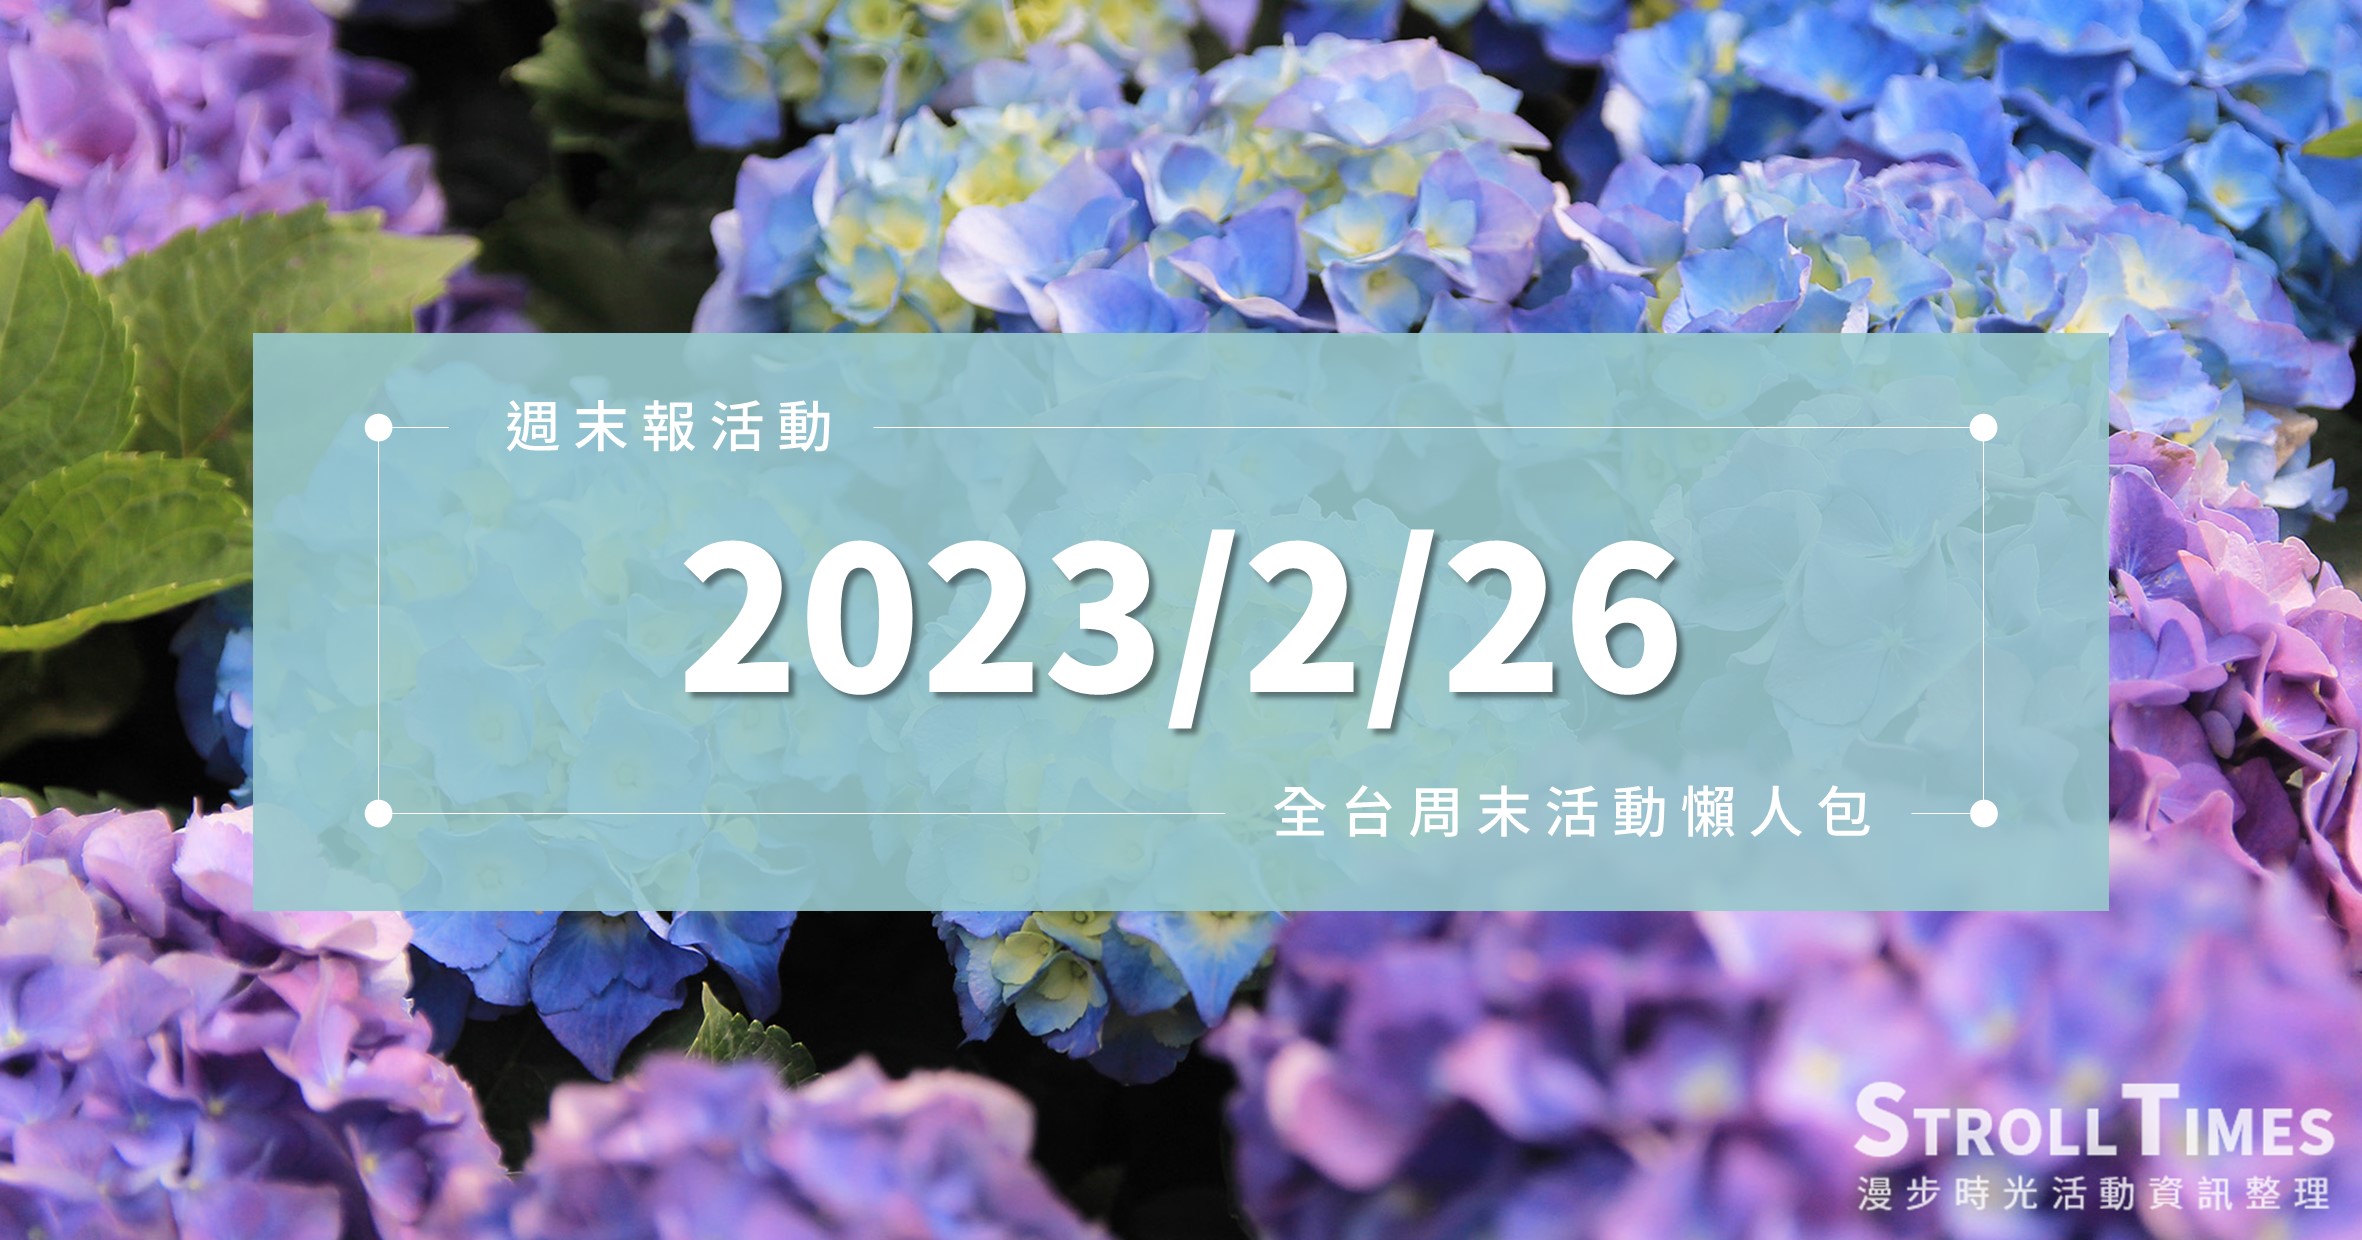 週末活動》全台「2023/2/26」二二八連假活動整理 @漫步時光